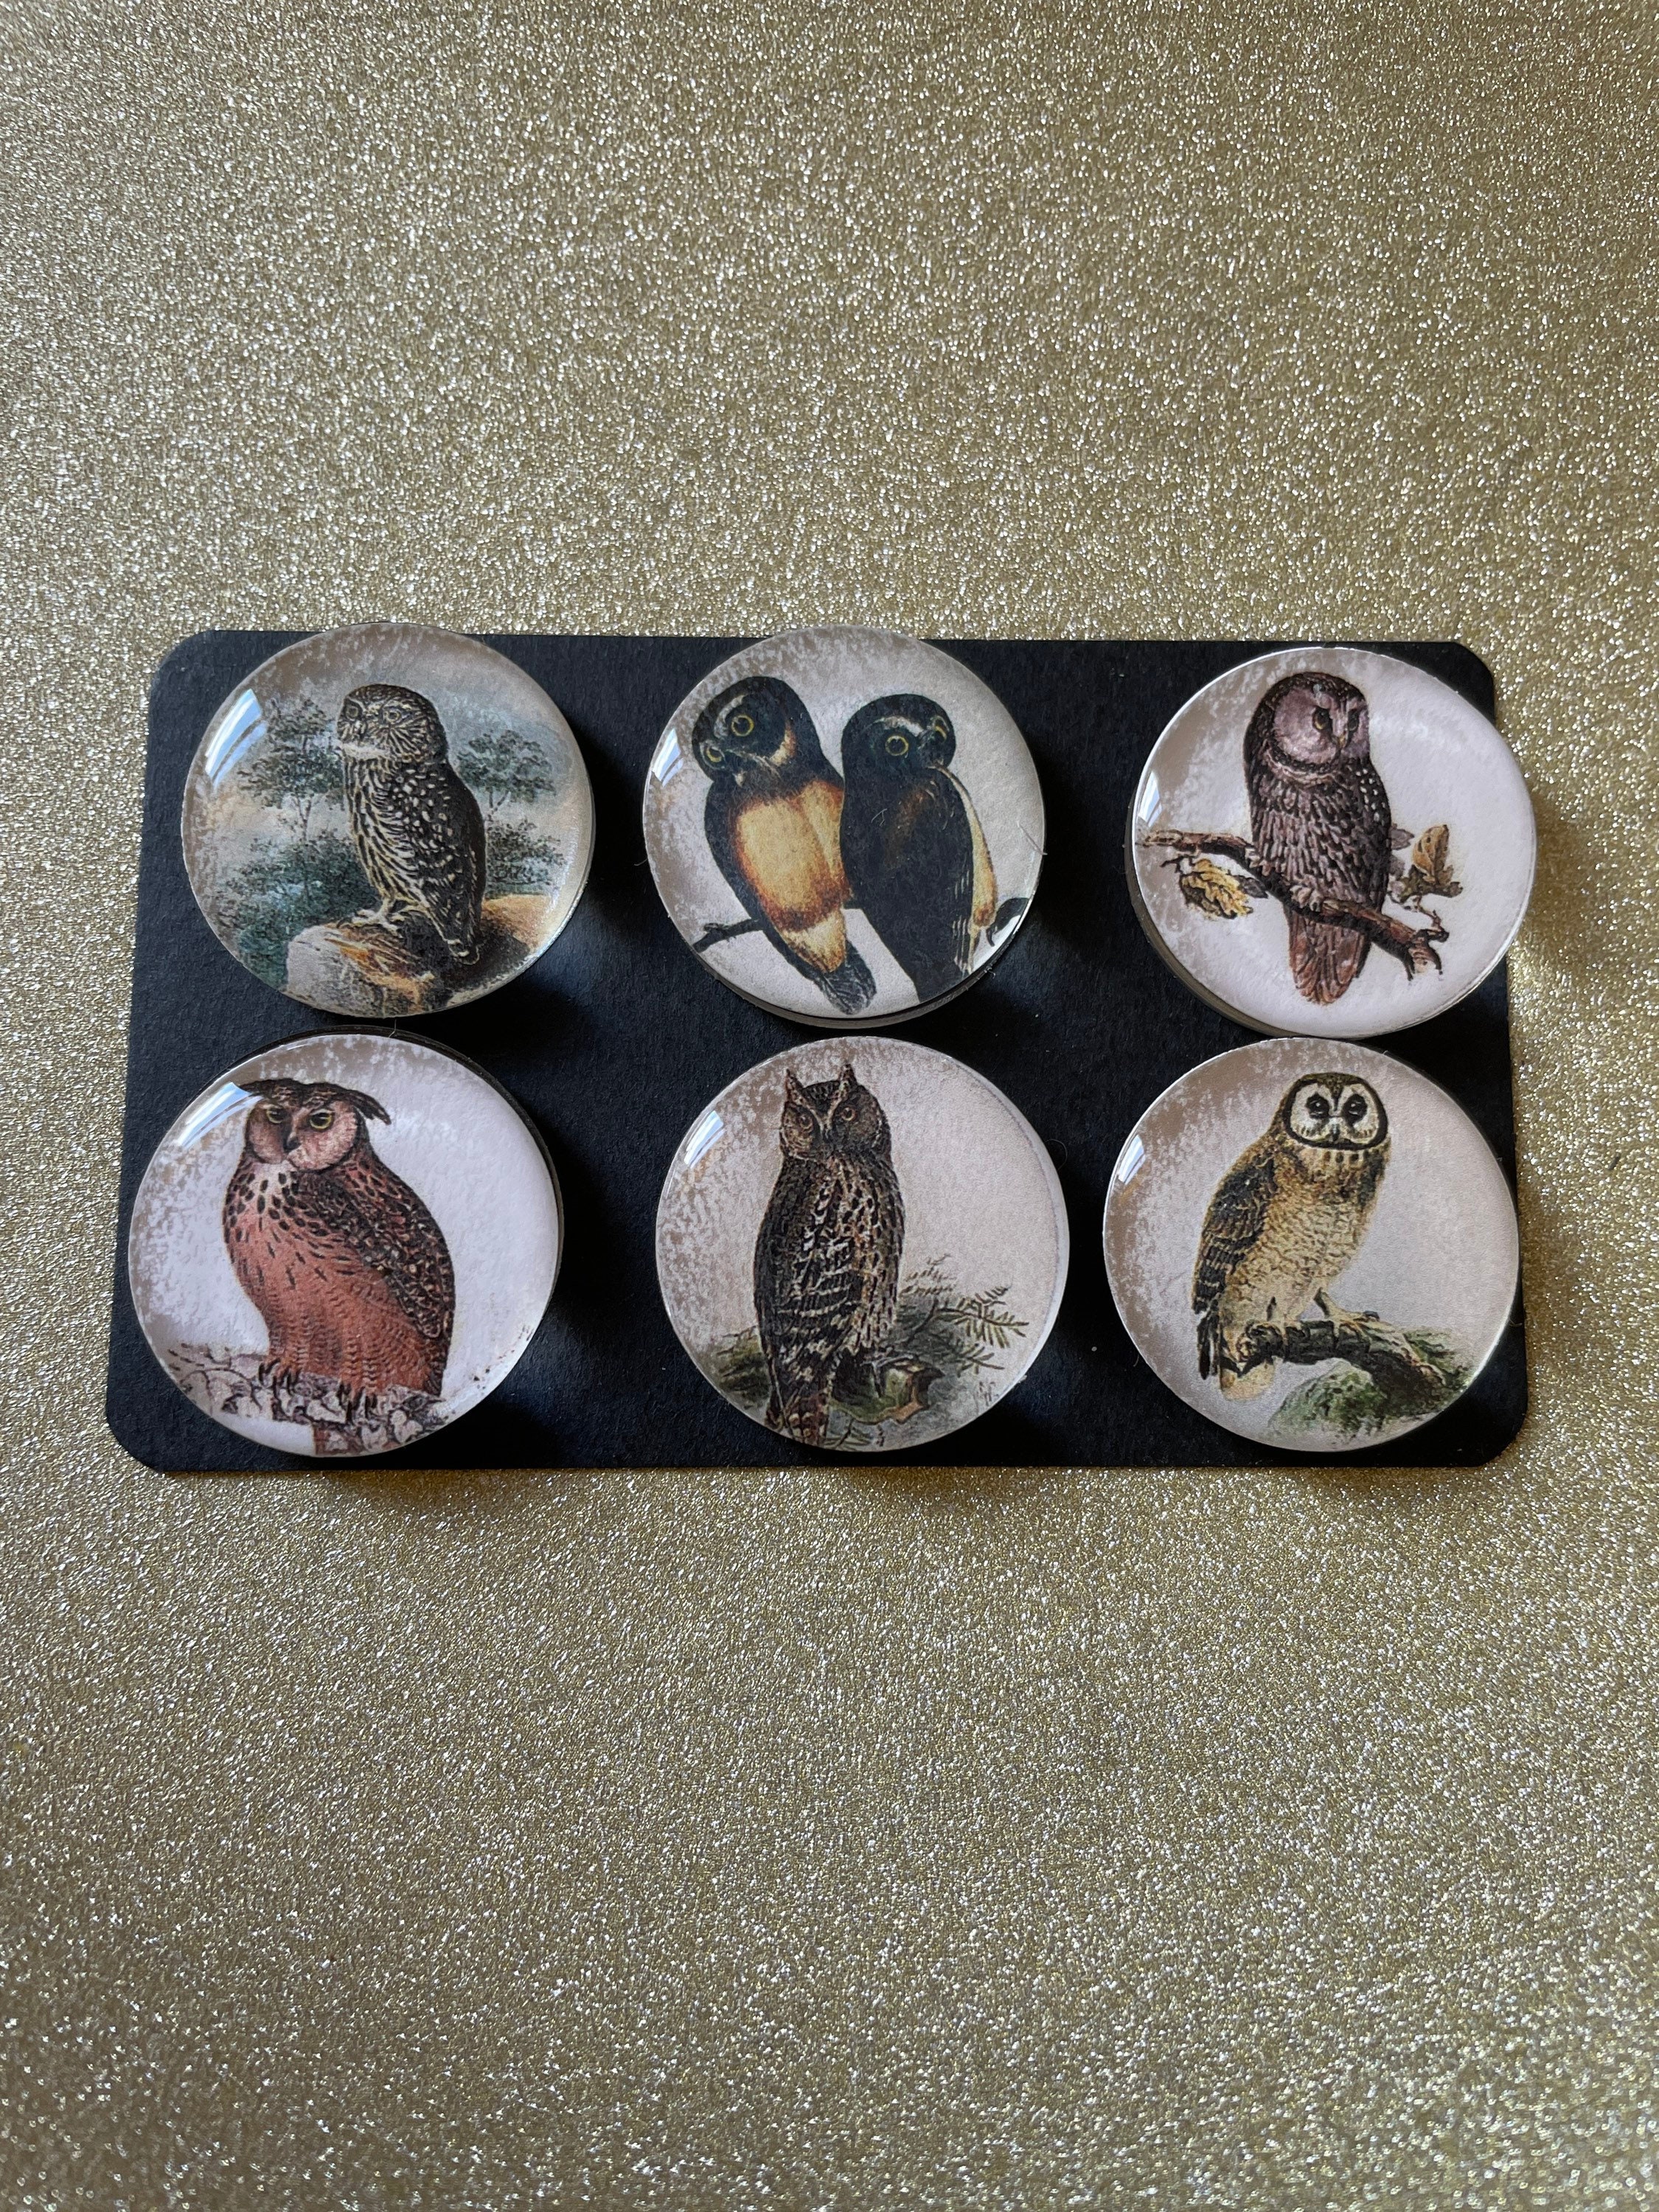 6 grumpy owl fridge,memo,decor magnets Lovely little gift idea 